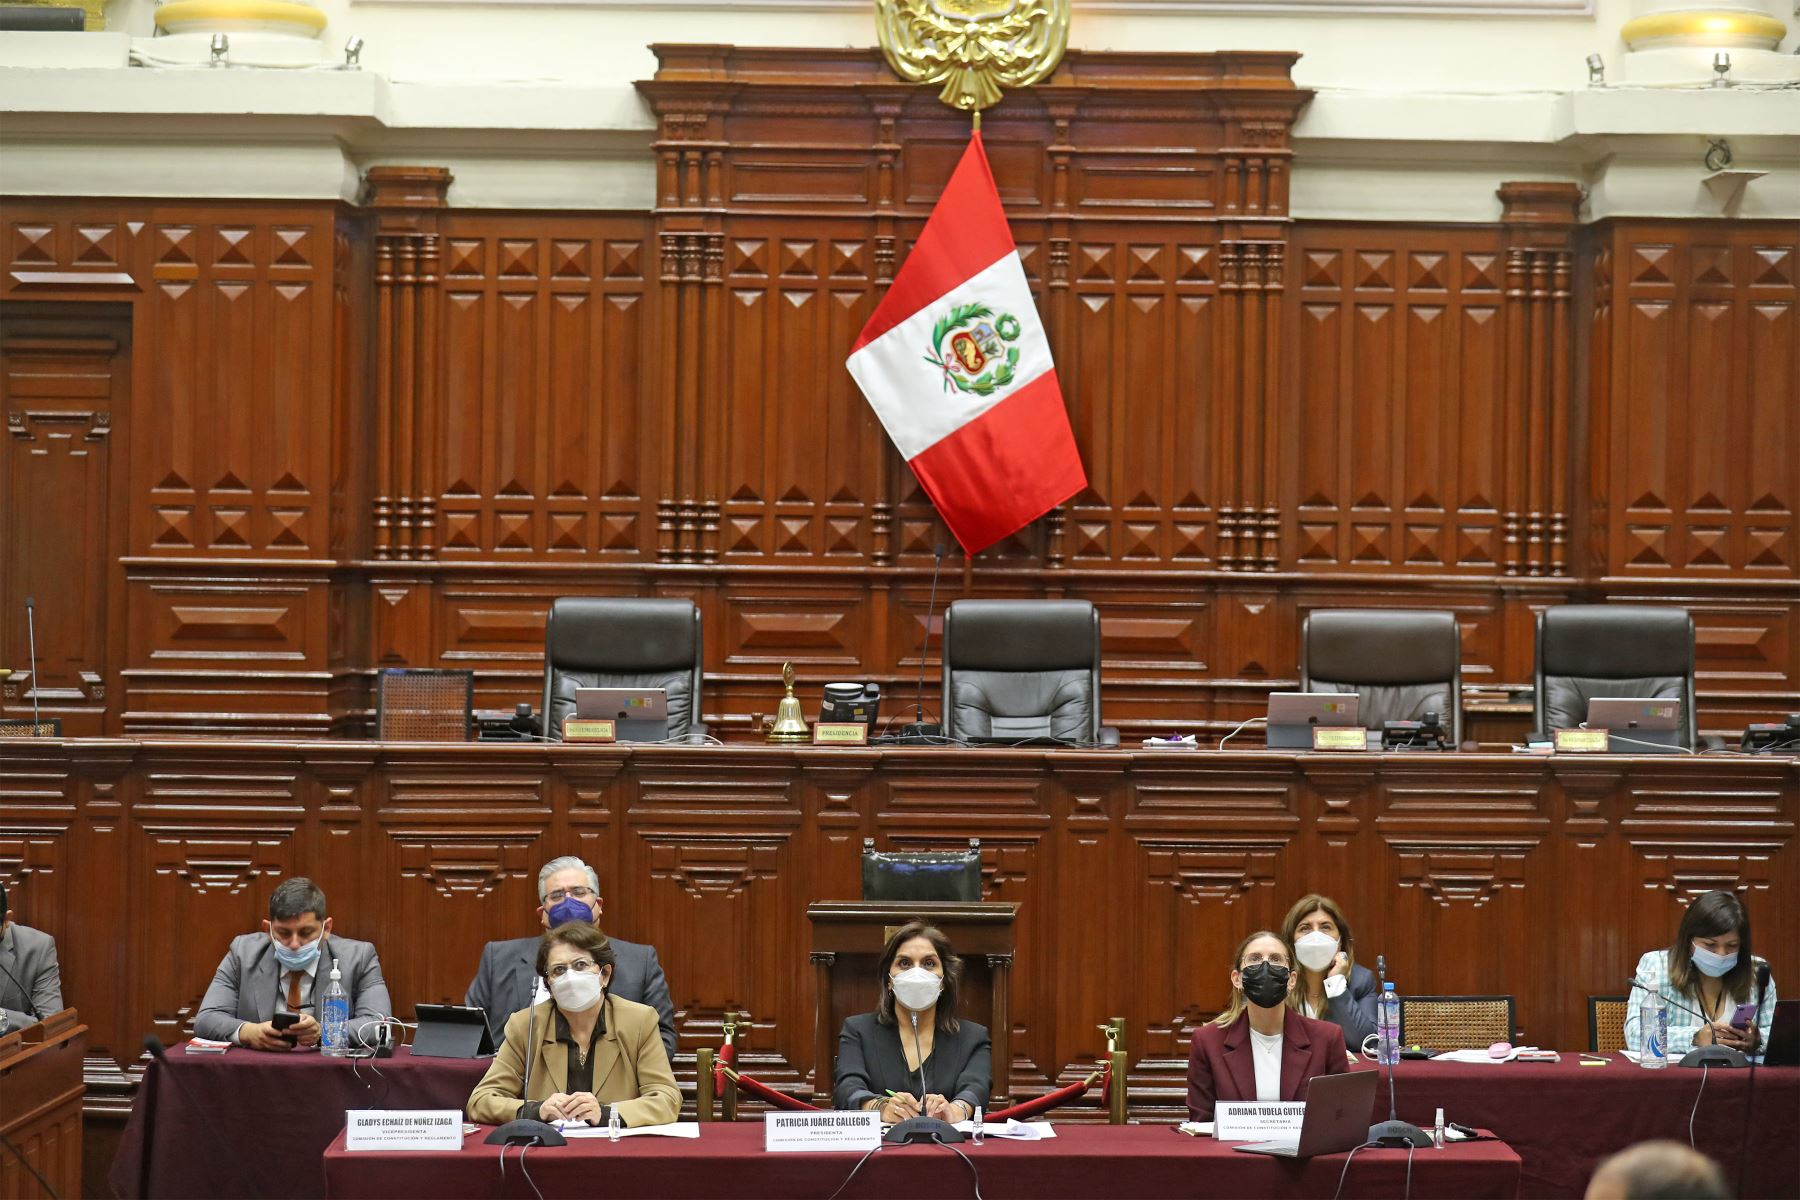 Patricia Juárez (Fuerza Popular) preside la Comisión de Constitución y Reglamento del Legislativo y apoya la aprobación del proyecto de ley para regresar a la bicameralidad. Foto: Congreso de la República.